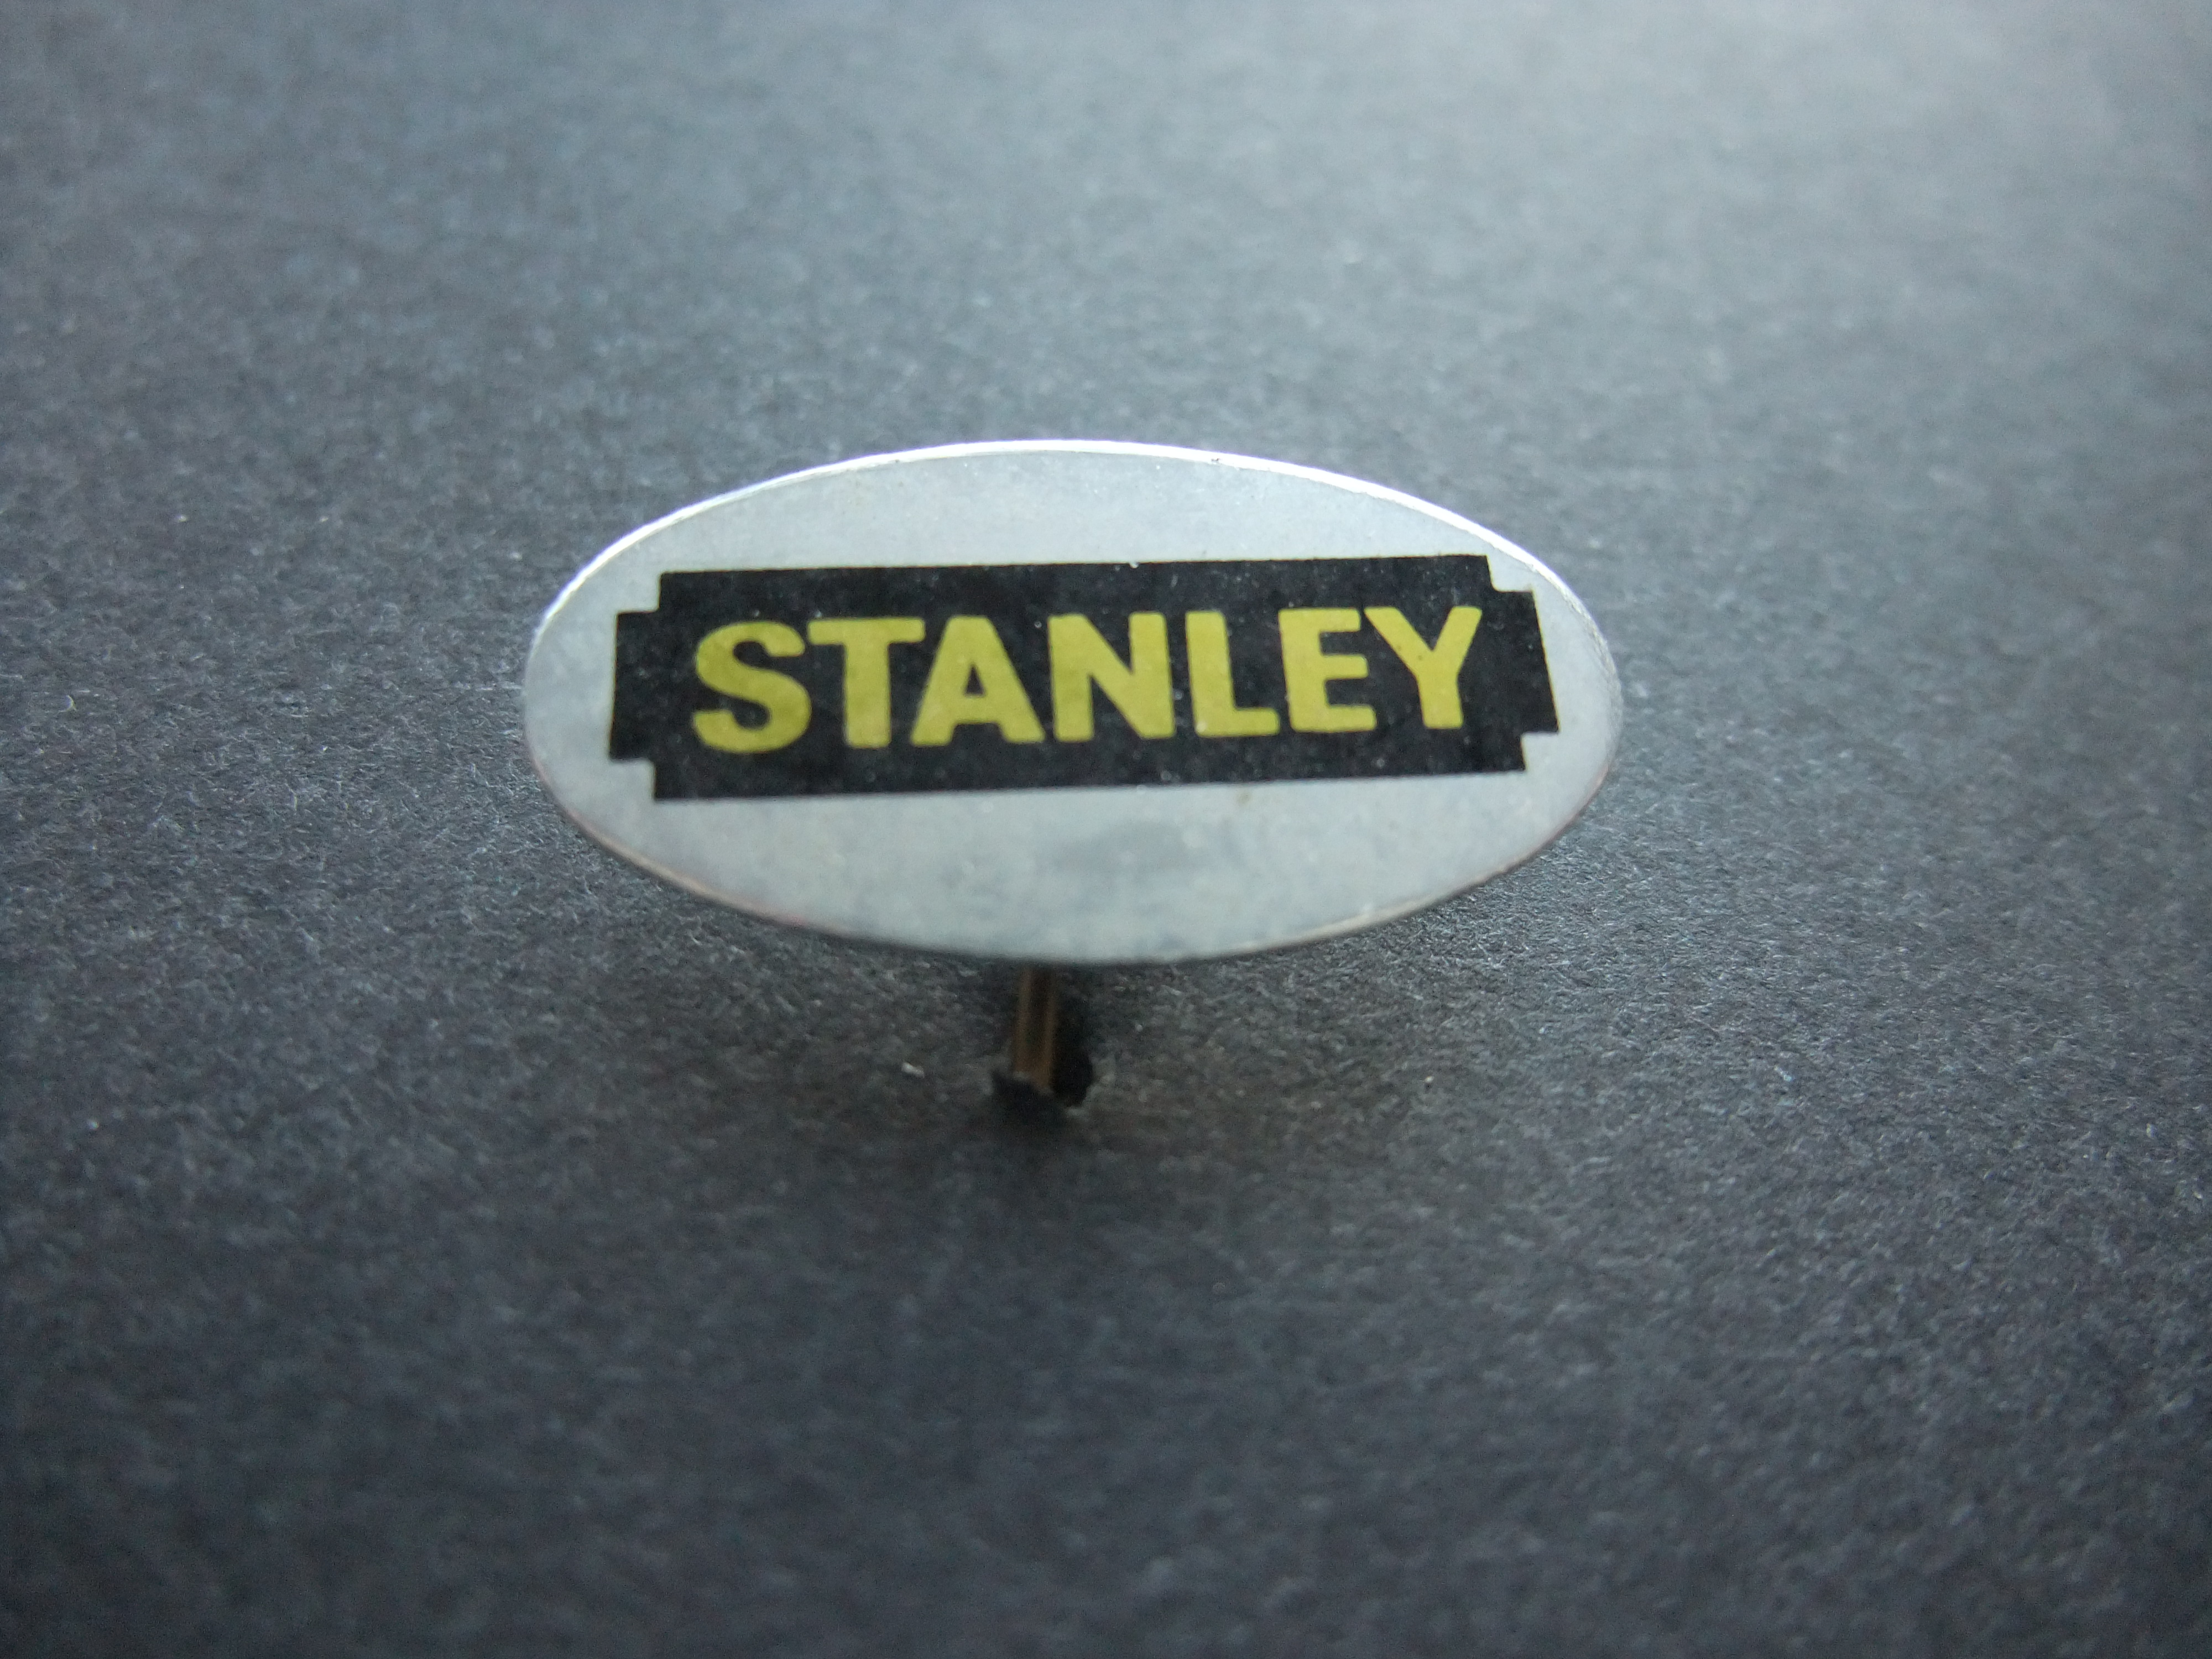 Stanley professionele handgereedschappen logo